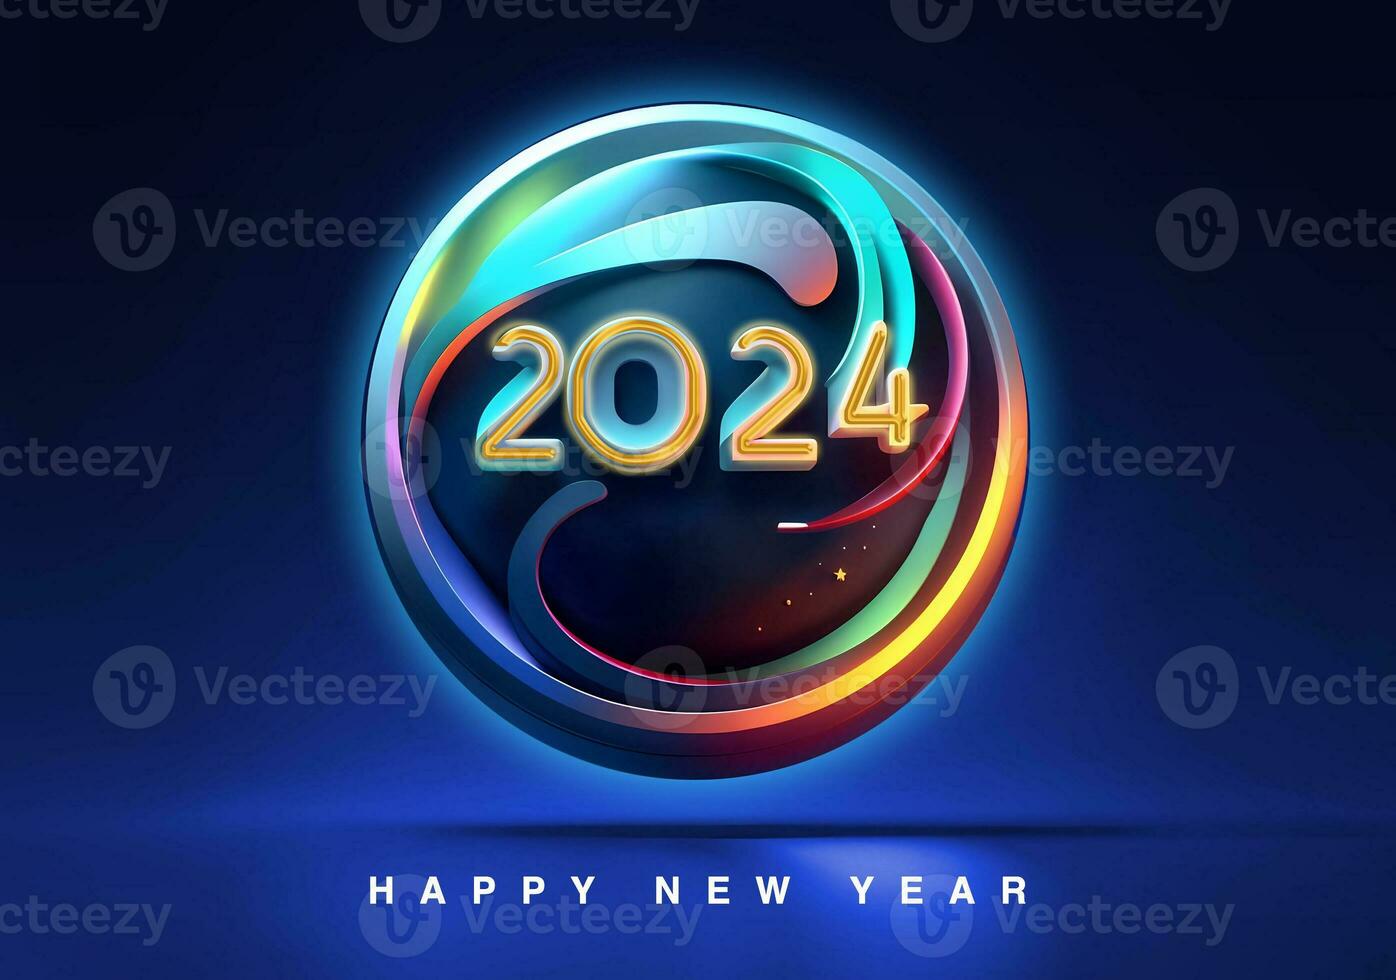 contento nuevo año 2024 3d hacer saludos tarjeta sencillo ilustración elegante lujoso tarjeta diseño foto